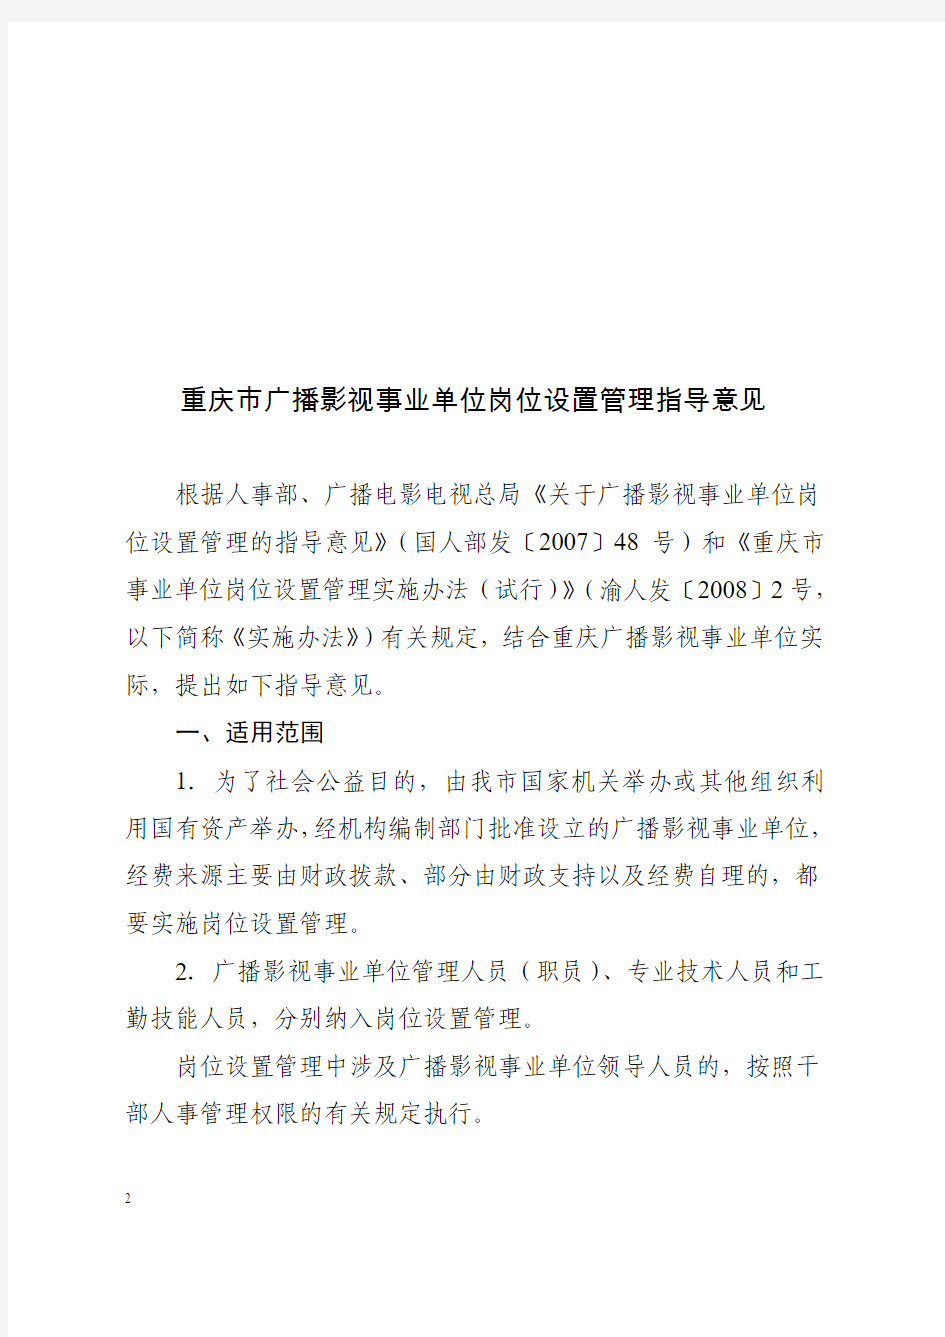 渝人发〔2008〕39号关于印发重庆市广播影视事业单位岗位设置管理指导意见的通知